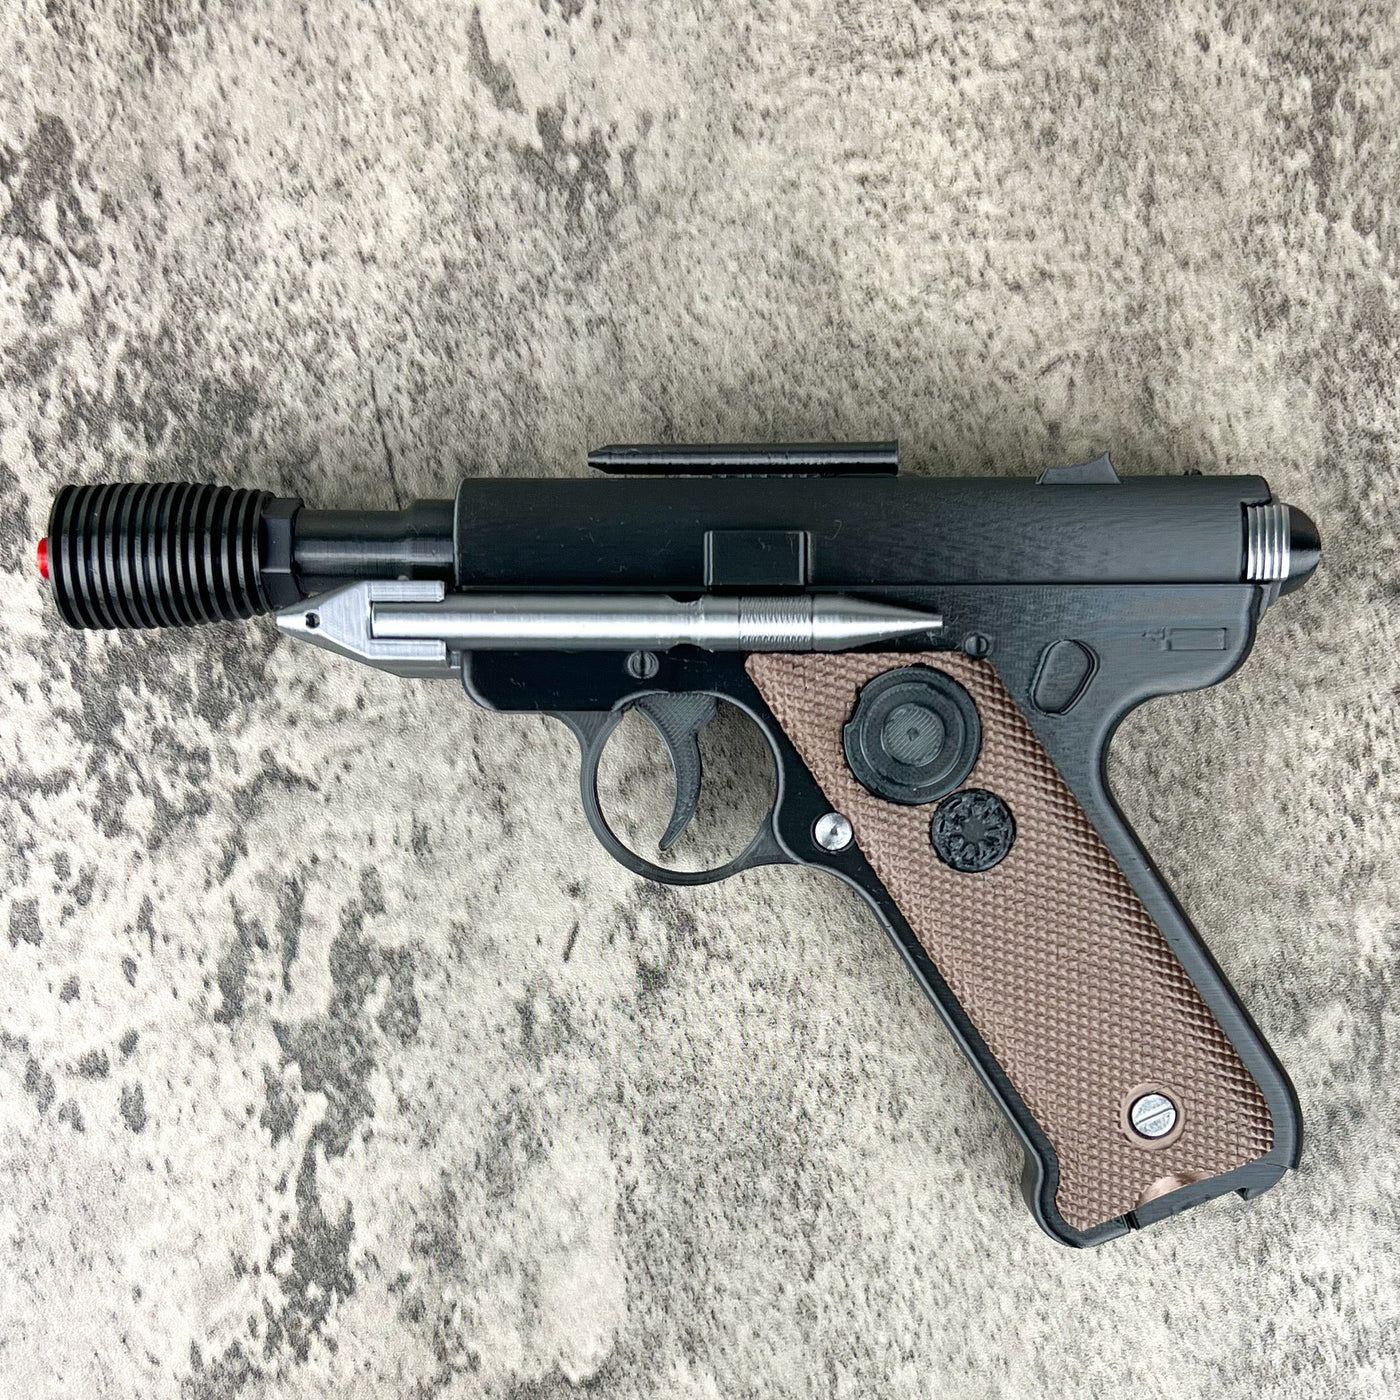 Star Wars DT-12 Blaster Pistol Gapo Goods